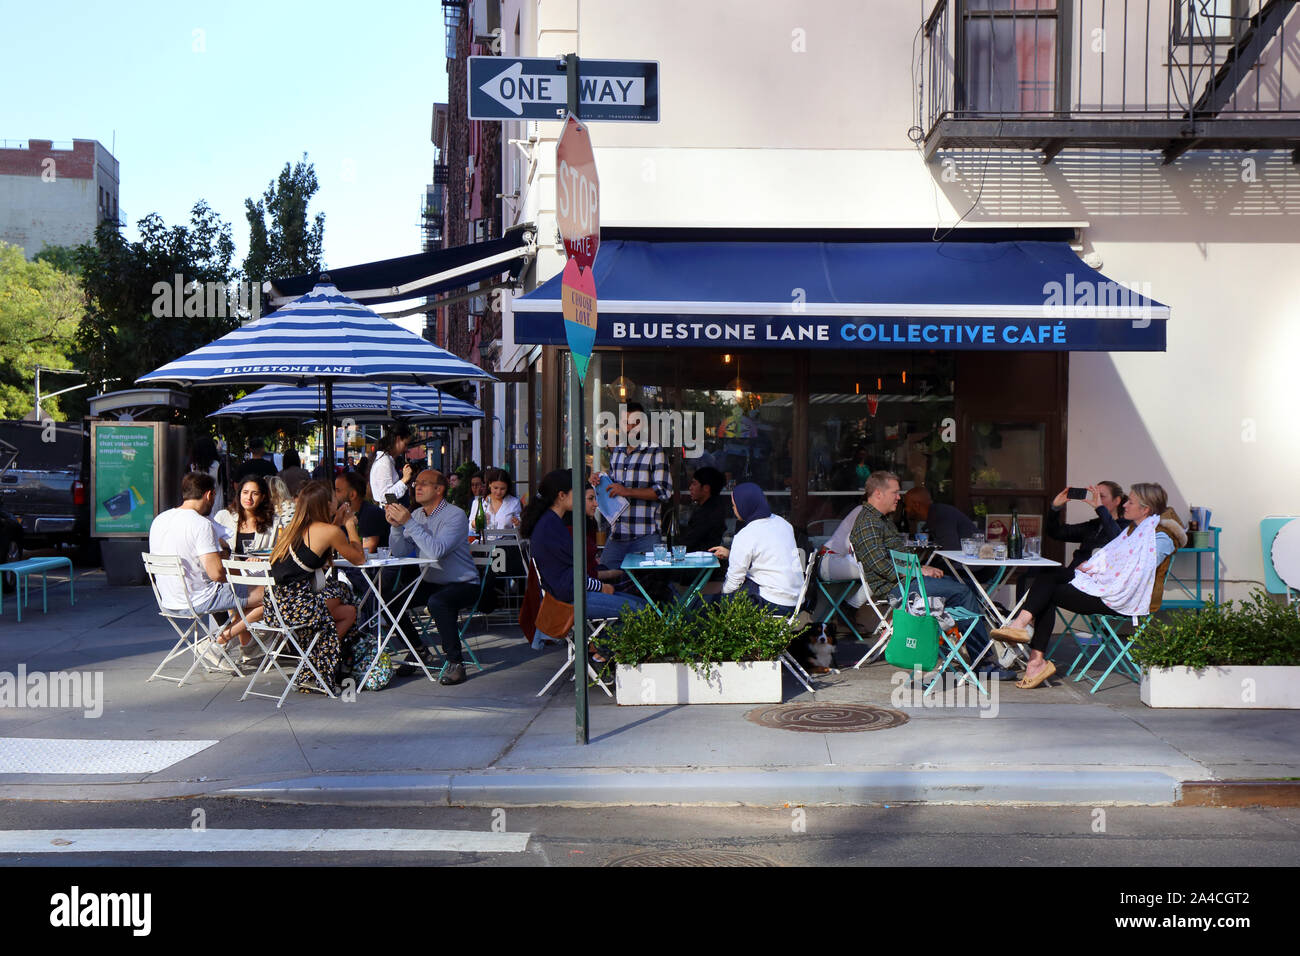 Lane Bluestone, Café Collective 55 Greenwich Avenue, New York, NY devanture extérieure d'un café-terrasse à la mode de Manhattan dans le Greenwich Village. Banque D'Images